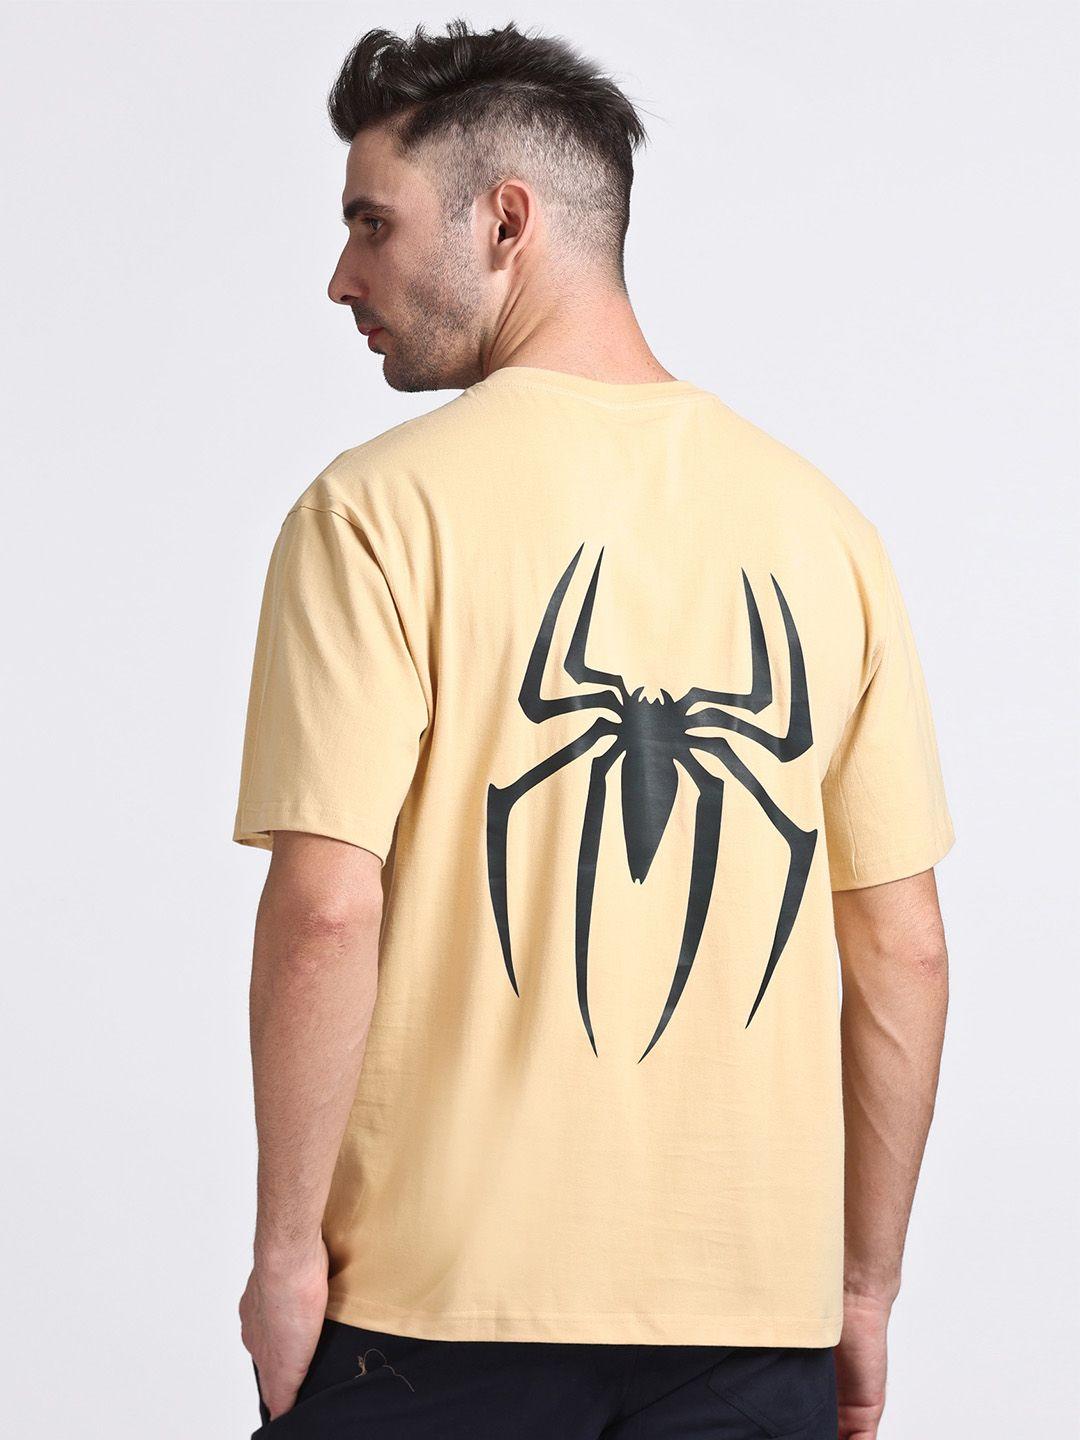 hillberg spider printed round neck cotton t-shirt